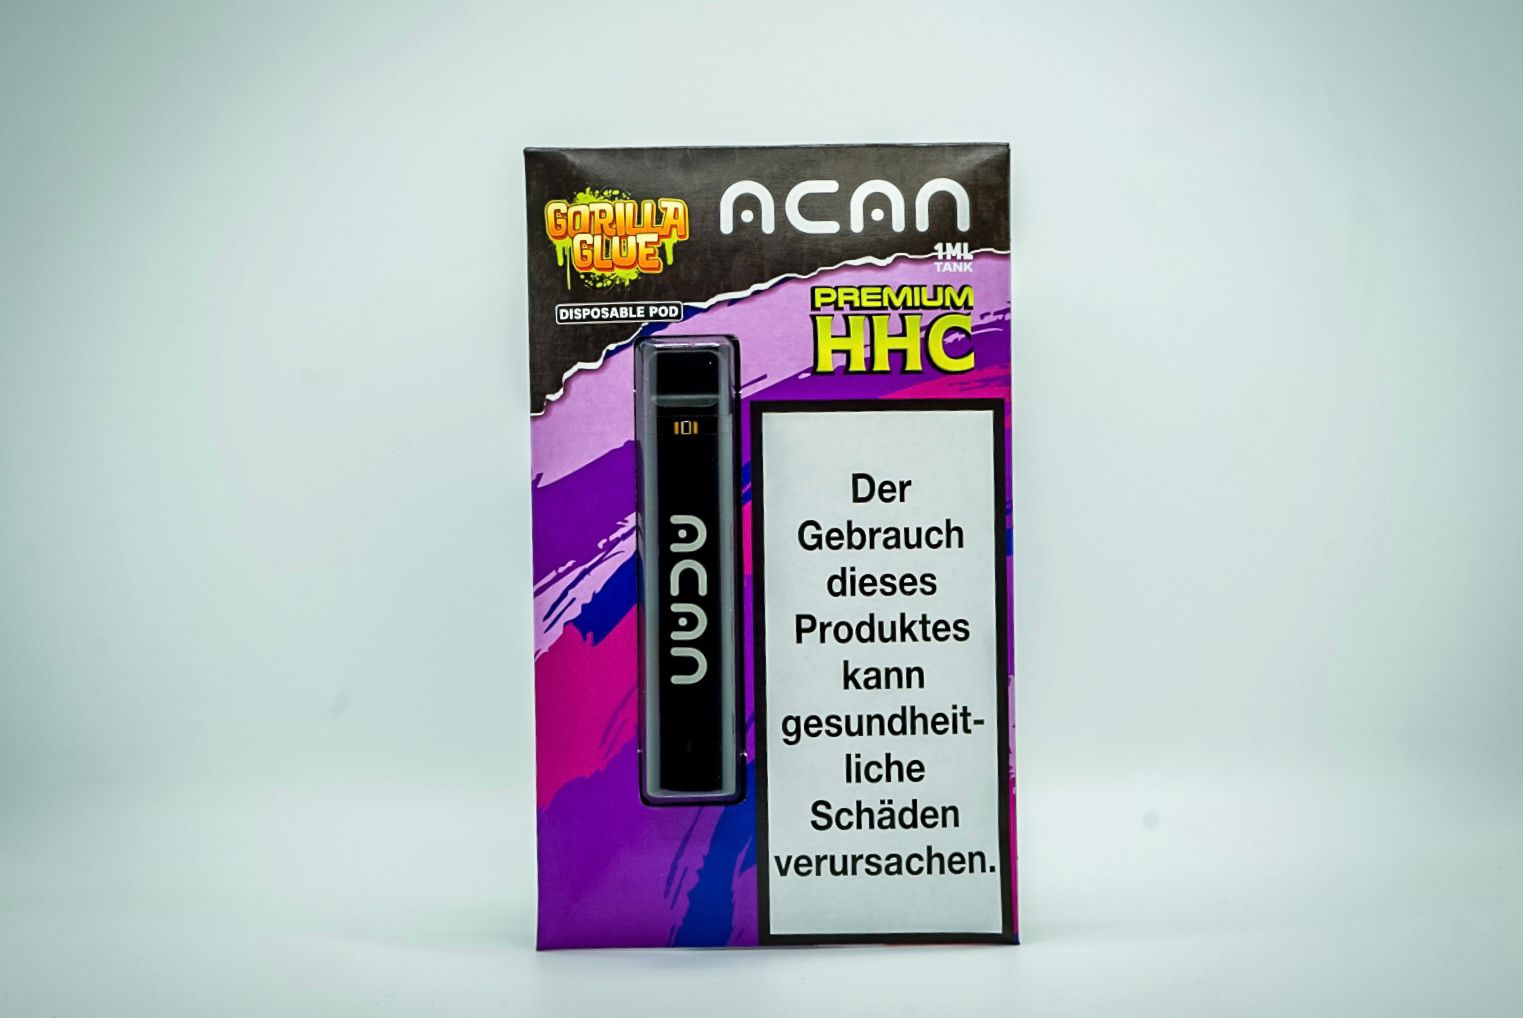 ACAN GOLD HHC Disposable Vape Pen 95% HHC – Gorilla Glue 1ml